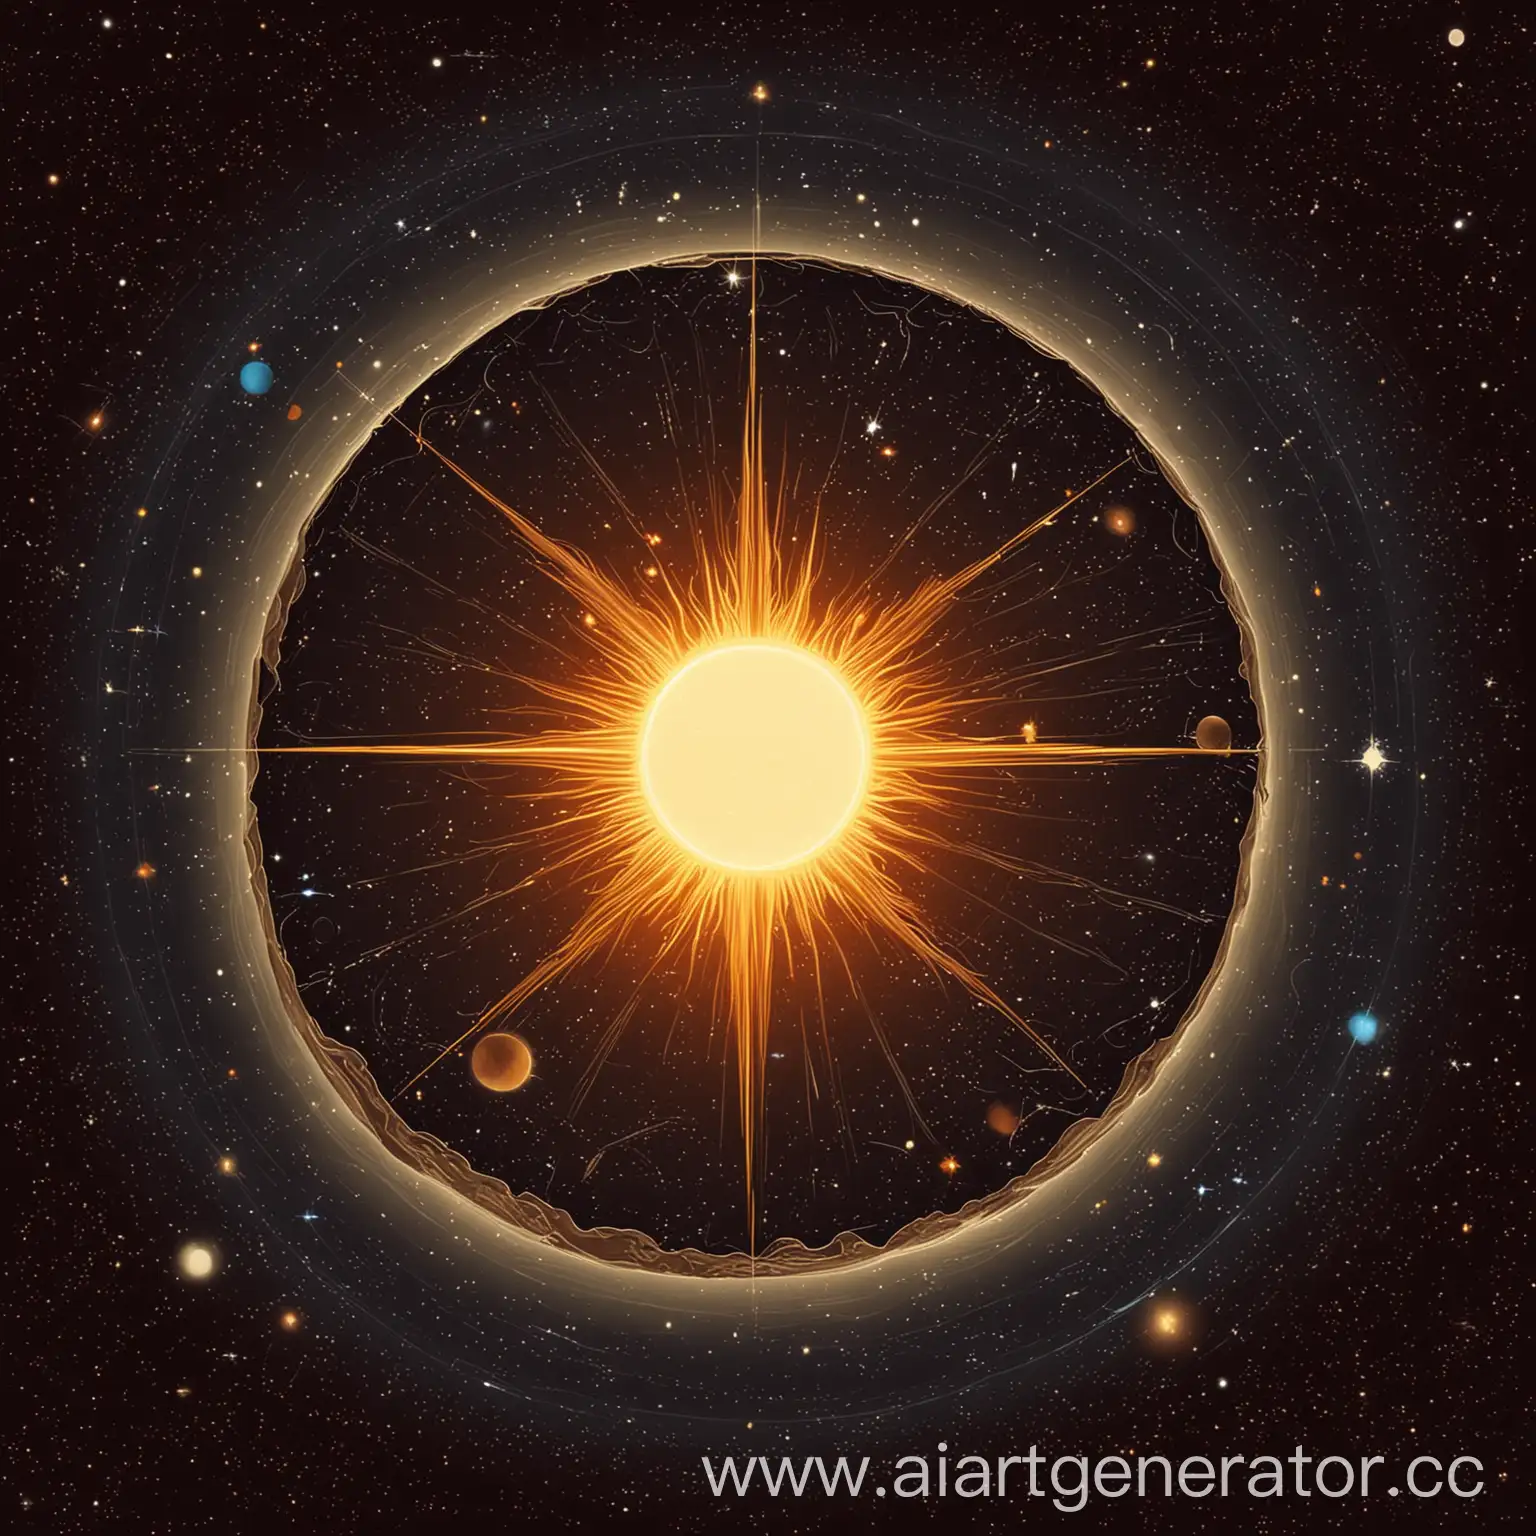 иллюстрация, астрономия, образование звезды Солнце, фон